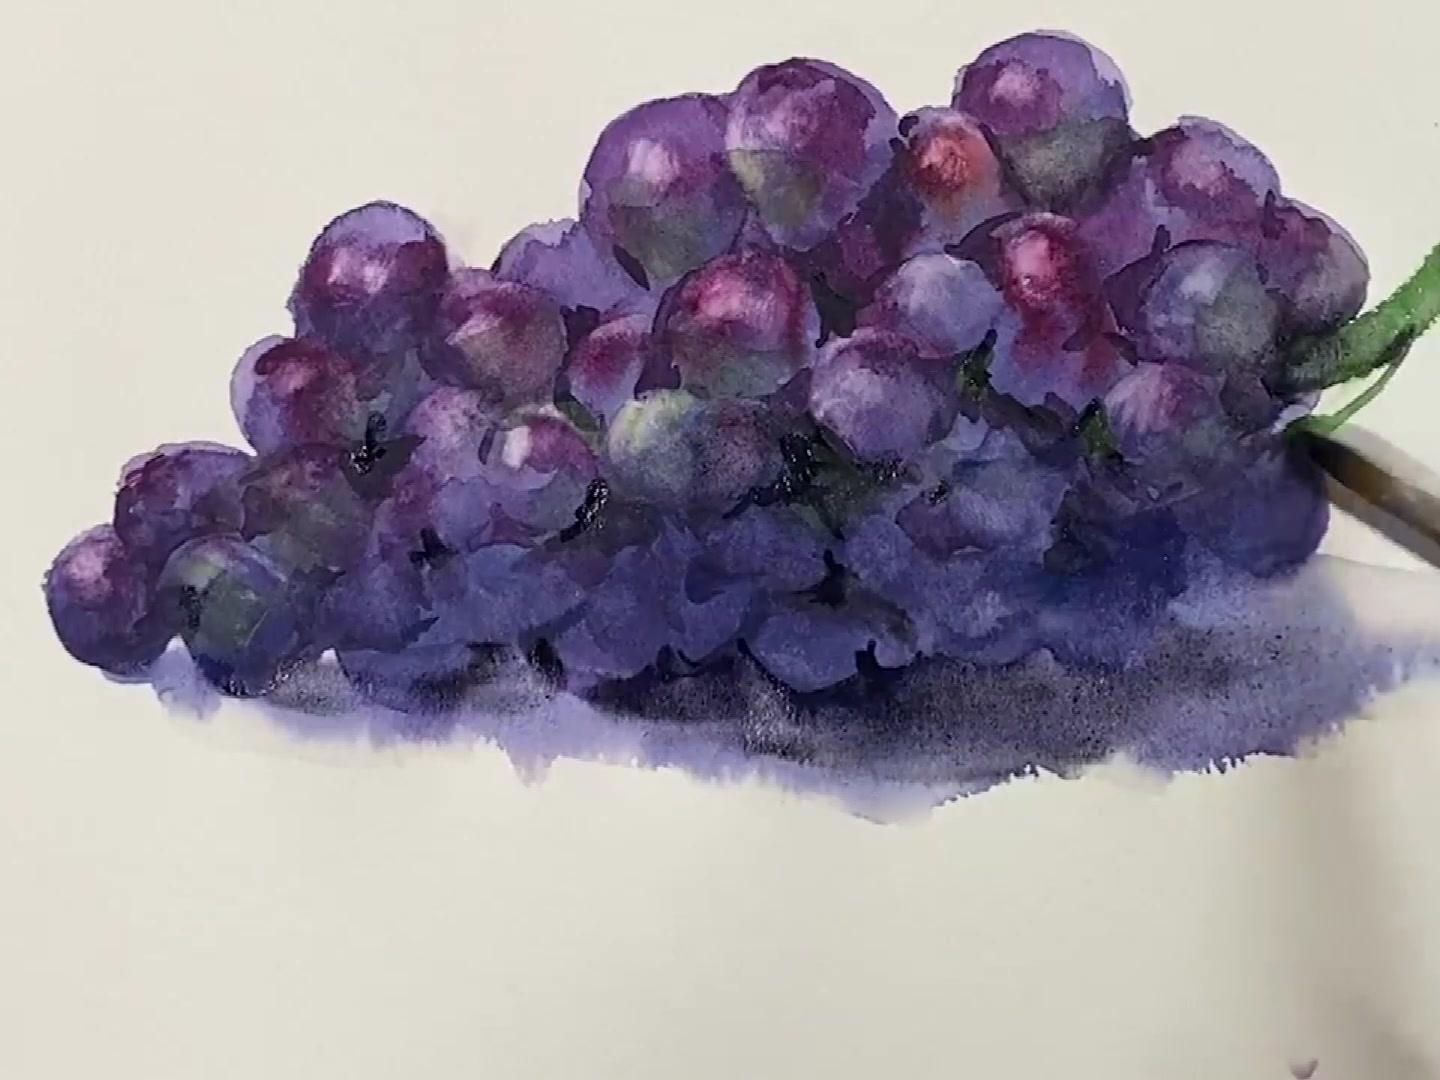 水彩画师柴崎春通5分钟教会你如何画葡萄 简单易学的水彩画 西瓜视频